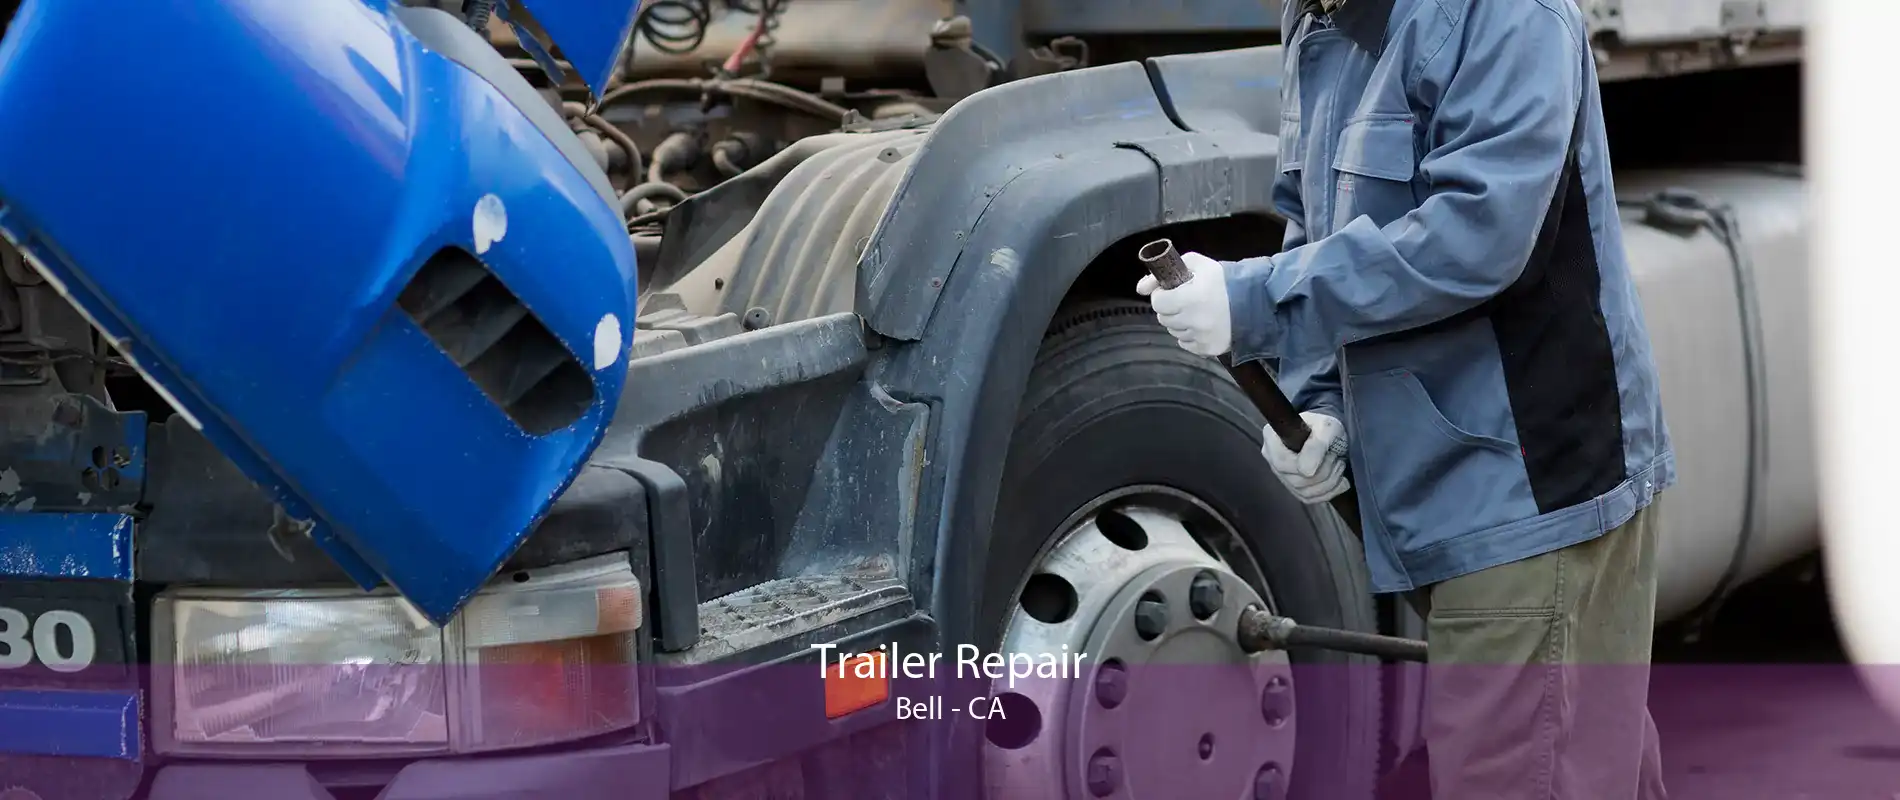 Trailer Repair Bell - CA